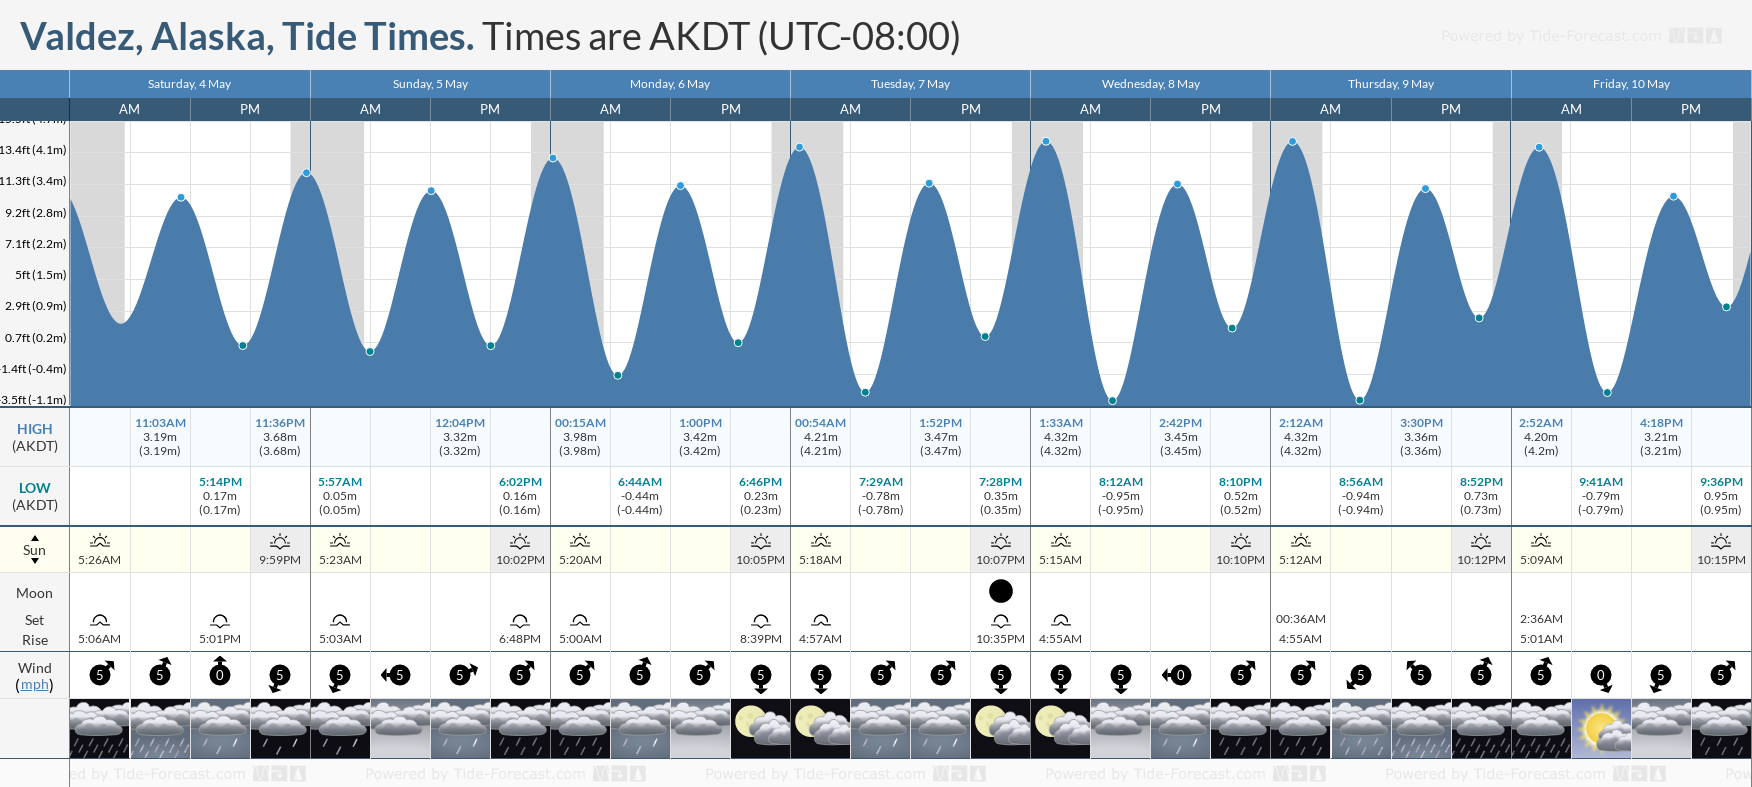 Valdez, Alaska Tide Chart including high and low tide tide times for the next 7 days